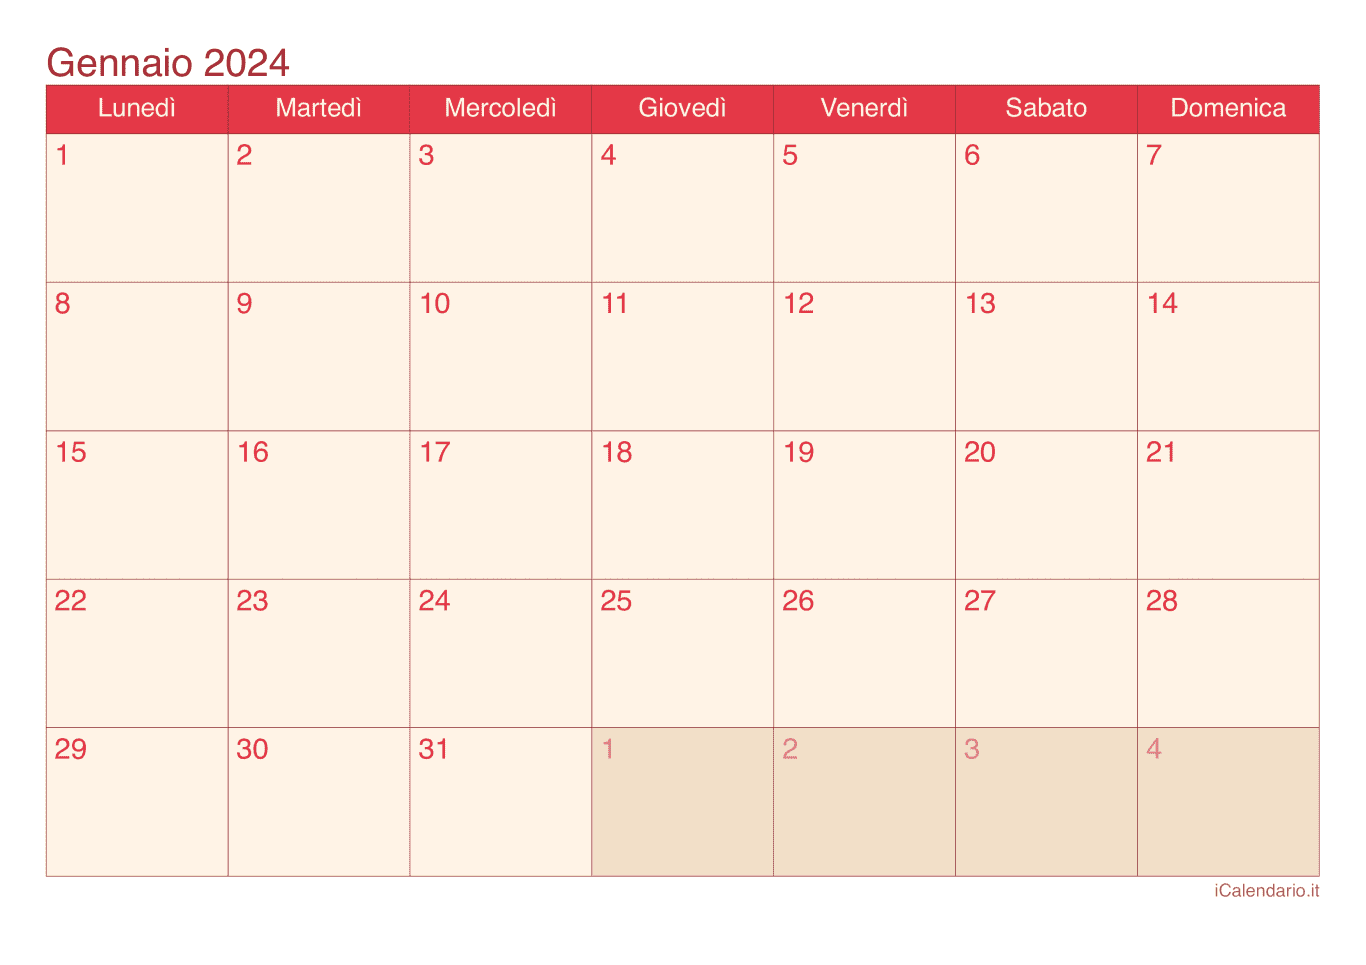 Calendario di gennaio 2024 - Cherry